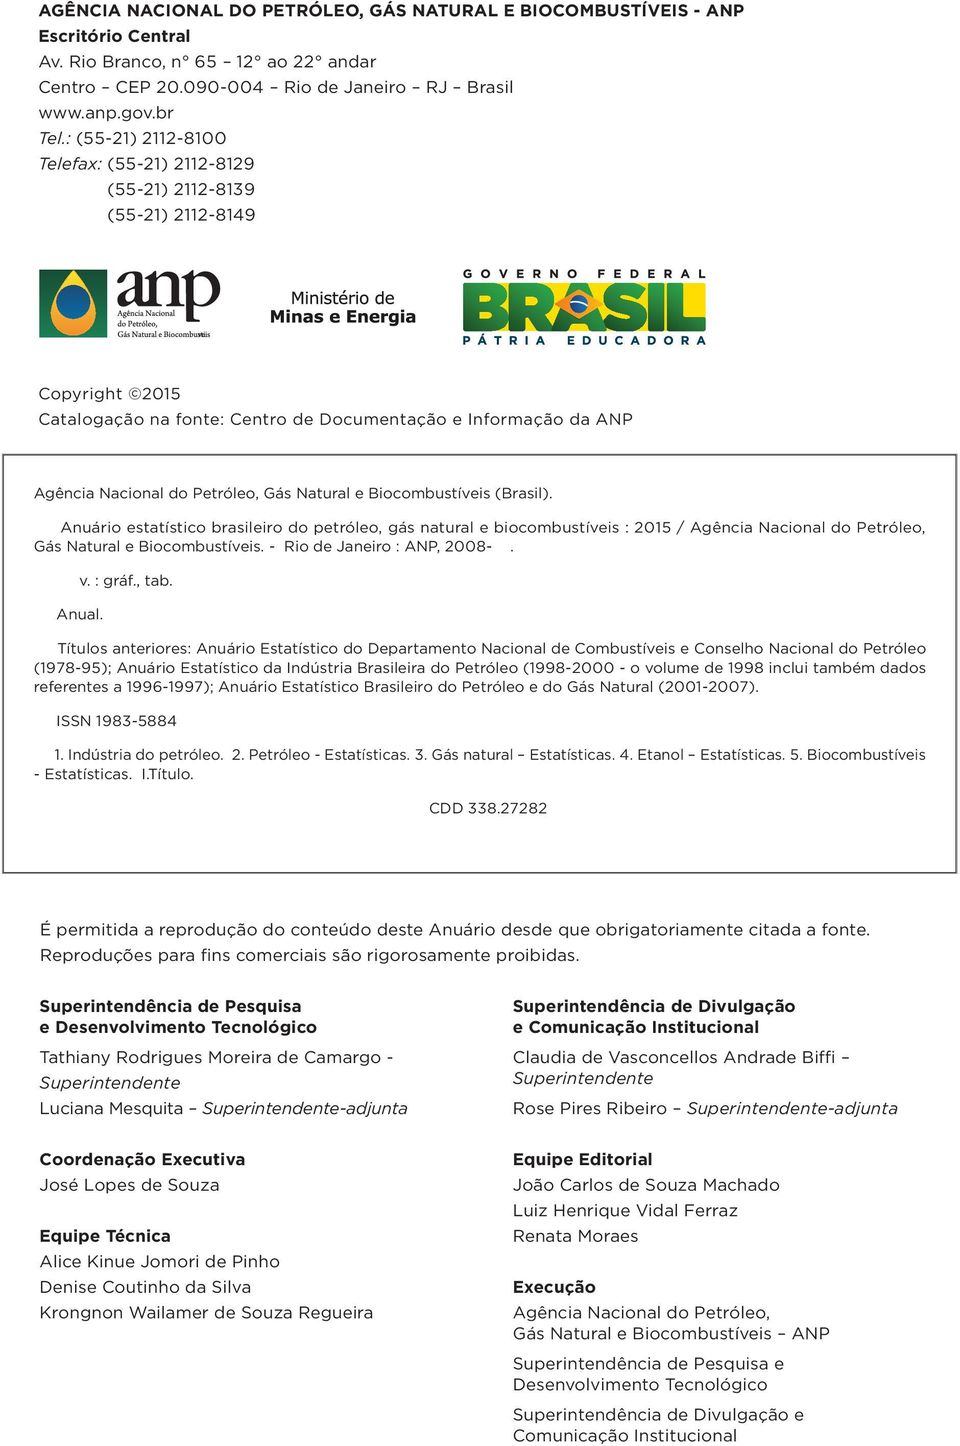 Natural e Biocombustíveis (Brasil). Anuário estatístico brasileiro do petróleo, gás natural e biocombustíveis : 2015 / Agência Nacional do Petróleo, Gás Natural e Biocombustíveis.